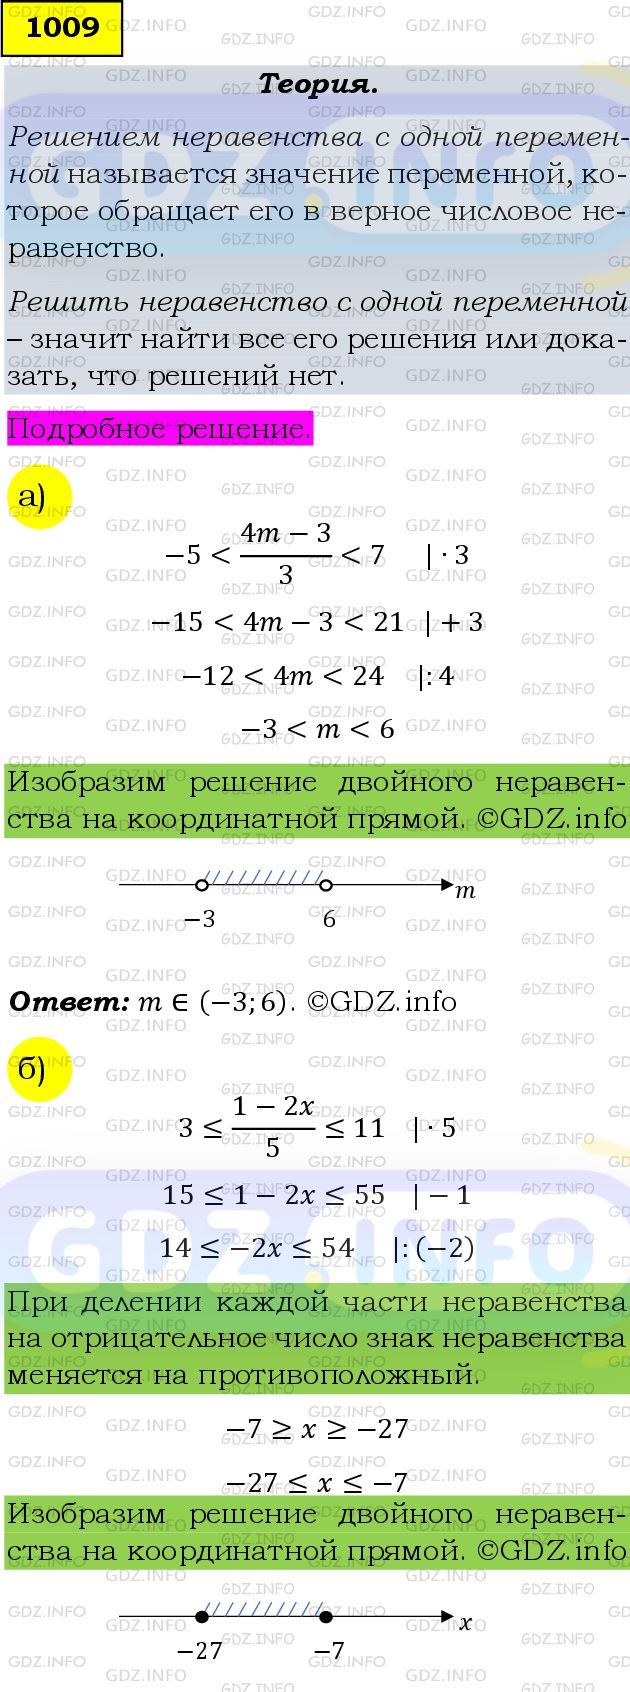 Фото подробного решения: Номер задания №1009 из ГДЗ по Алгебре 9 класс: Макарычев Ю.Н.